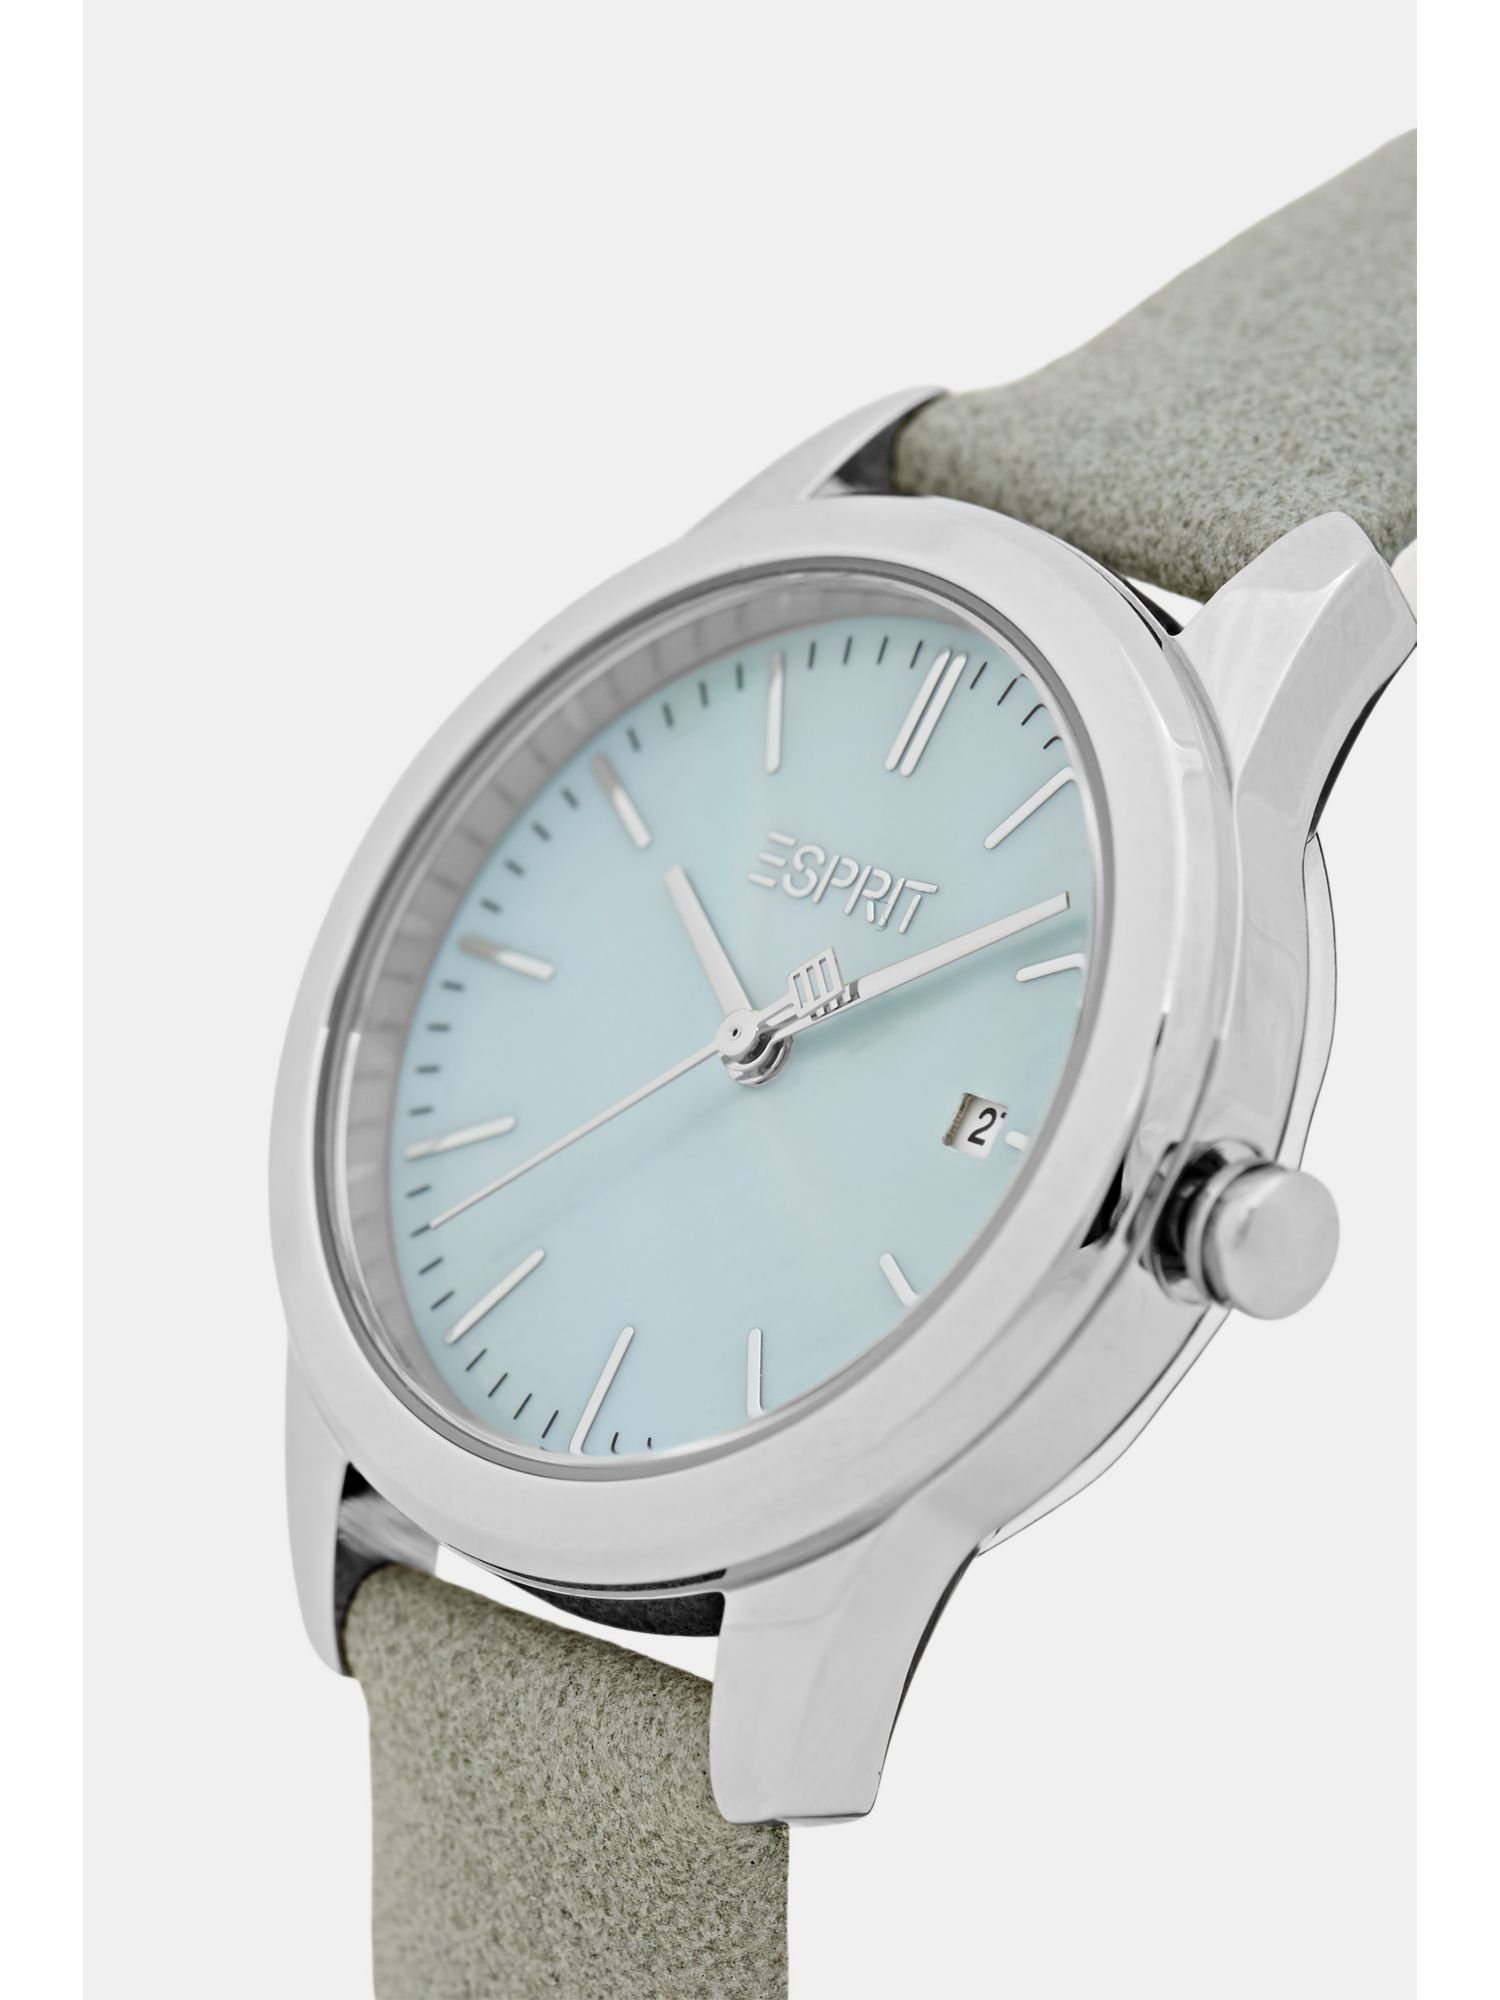 Damen Uhren Esprit Quarzuhr Edelstahl-Uhr mit Armband in Lederoptik